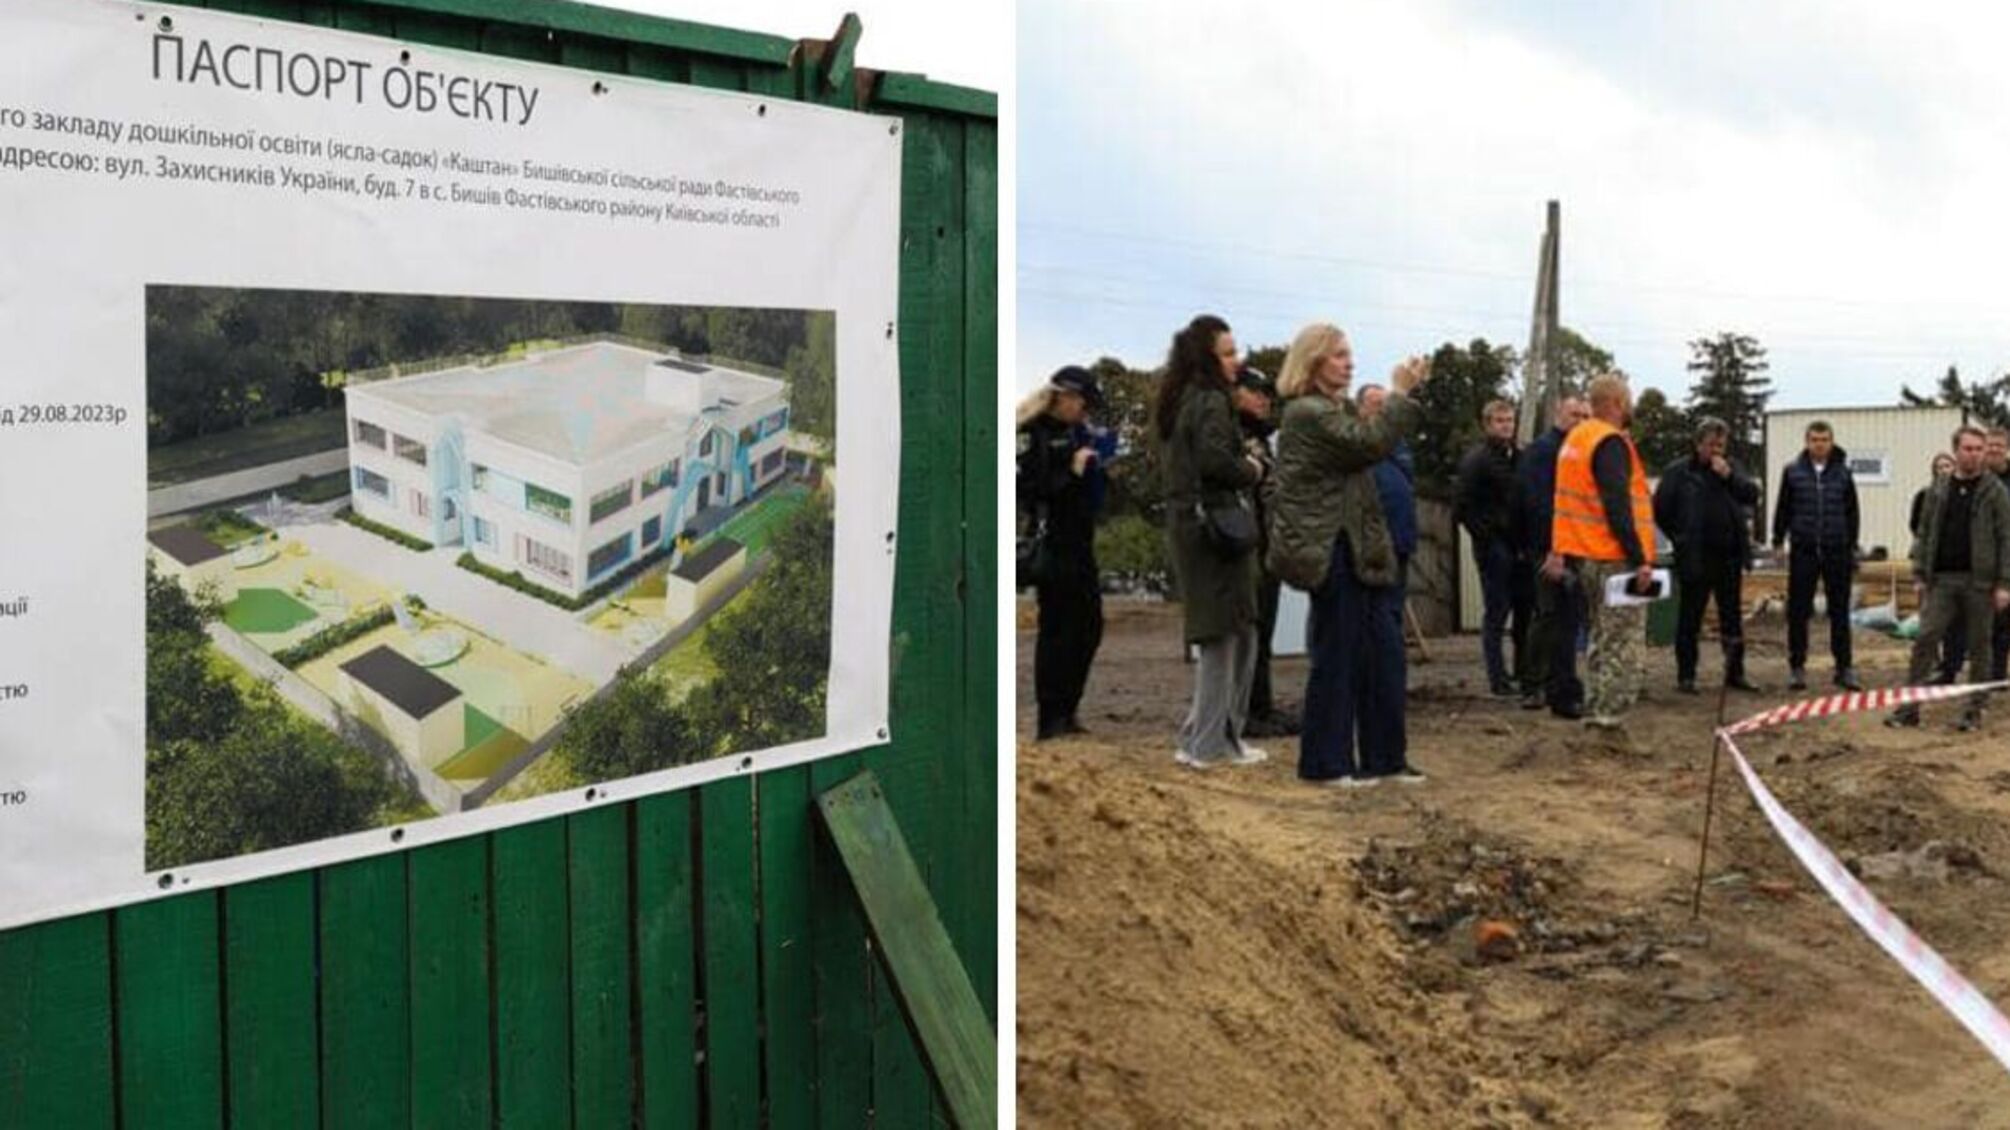 Начали комиссионные обзоры объектов восстановления в Киевской области: первым - детсад 'Каштан' в Бышеве